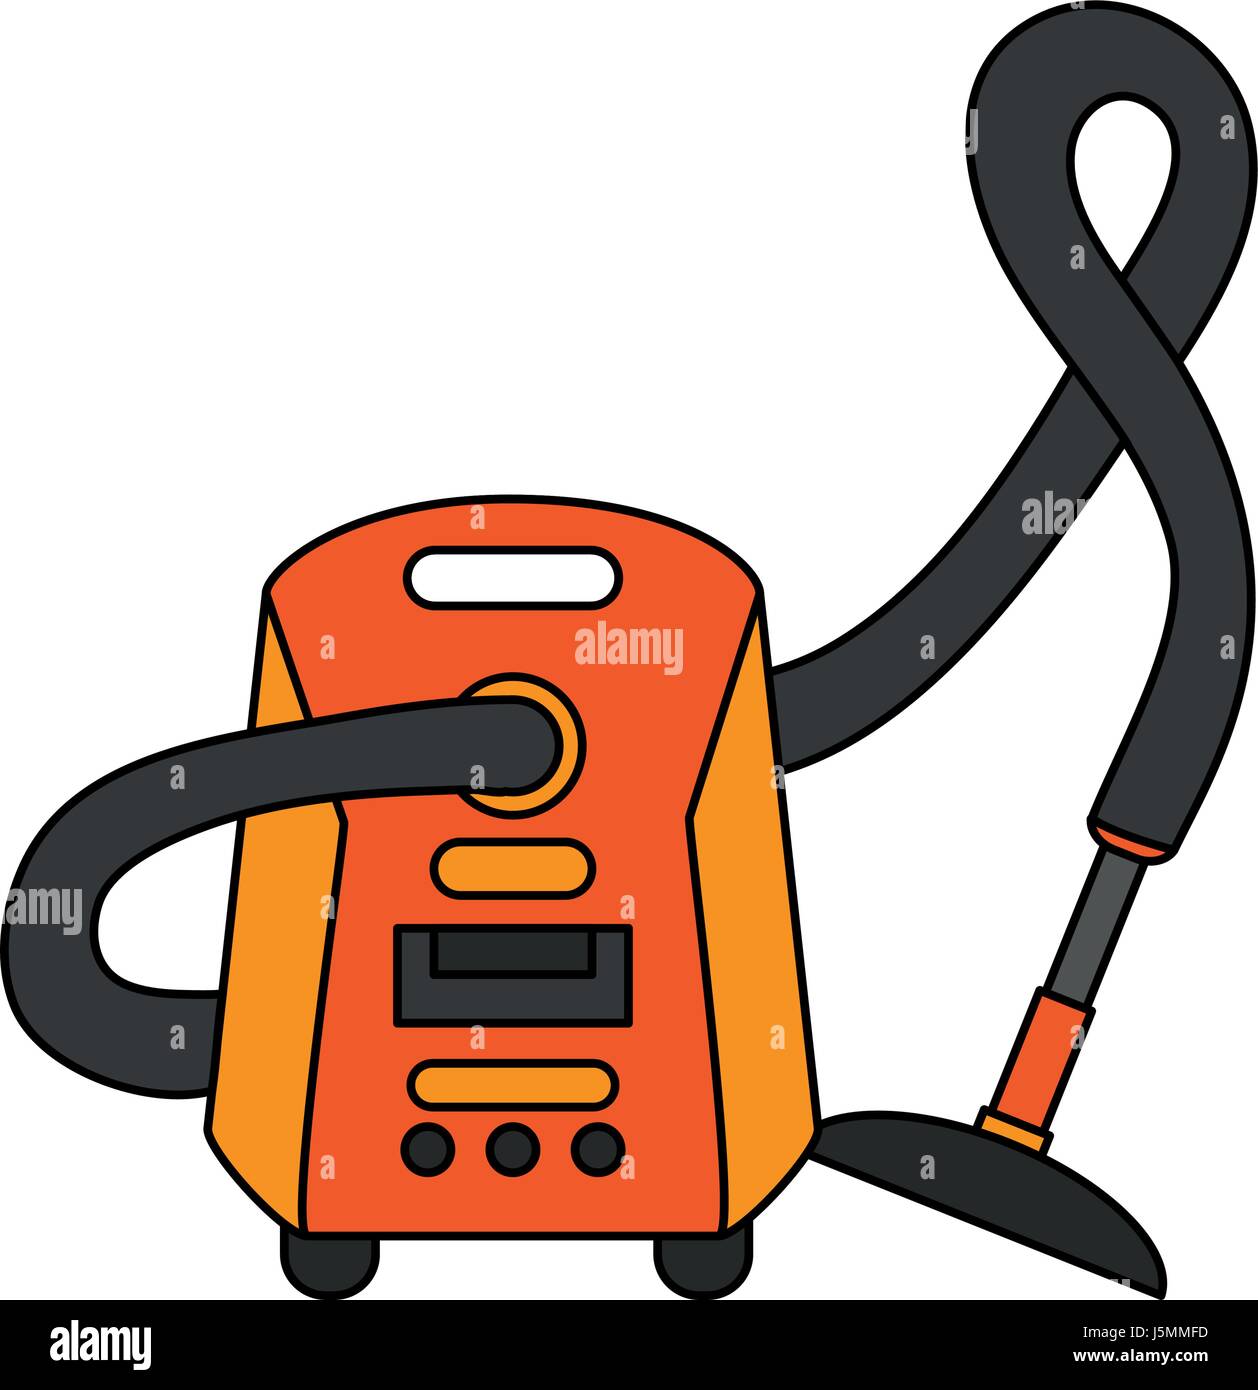 Imagen en color aspirador eléctrico de dibujos animados Imagen Vector de  stock - Alamy